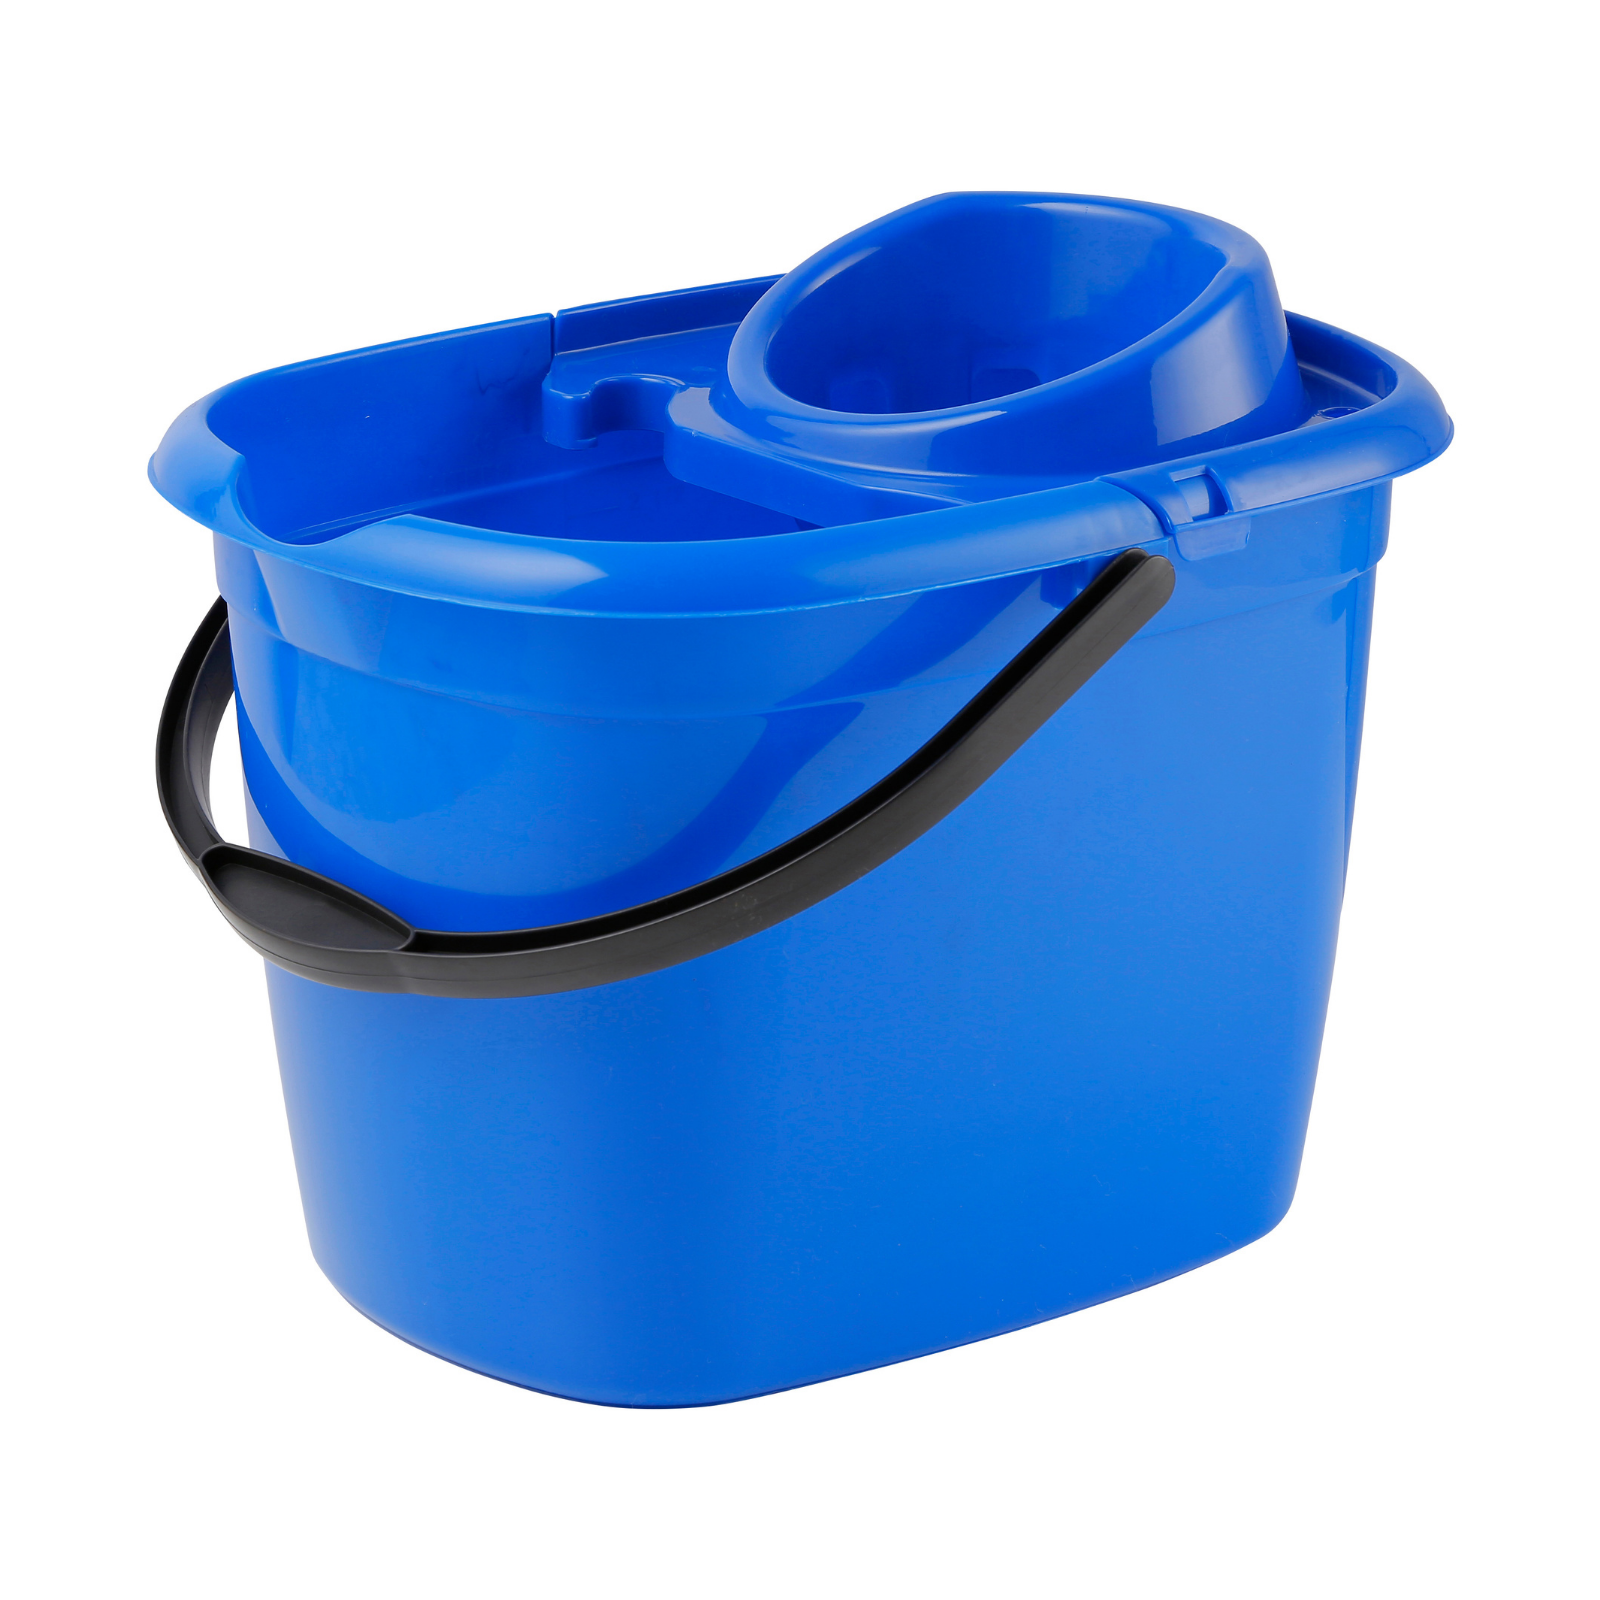 12 Ltr Standard Mop Bucket - Blue